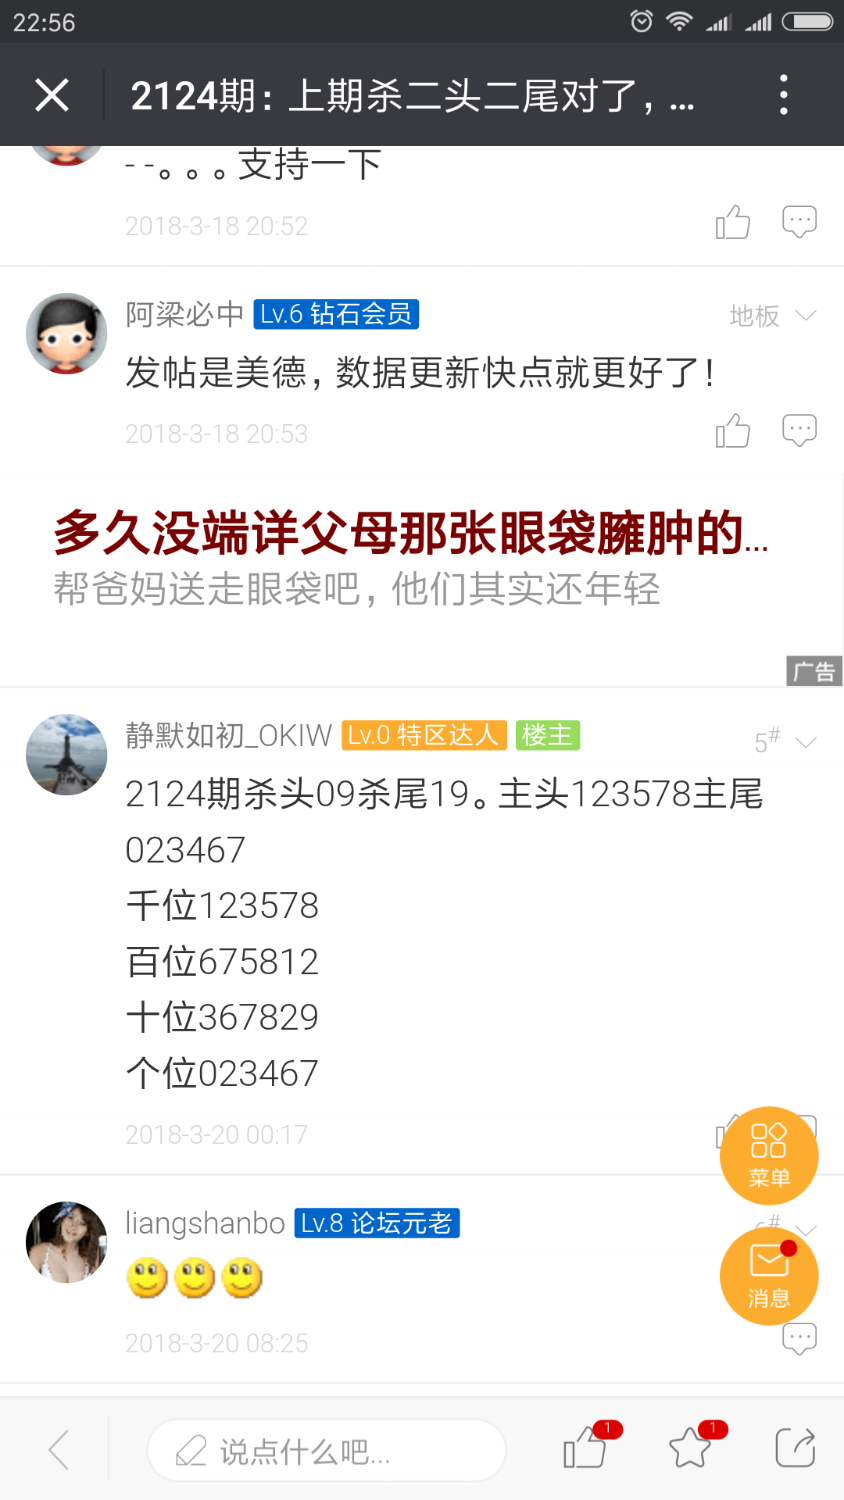 Screenshot_2018-03-25-22-58-11-794_com.tencent.mm.png